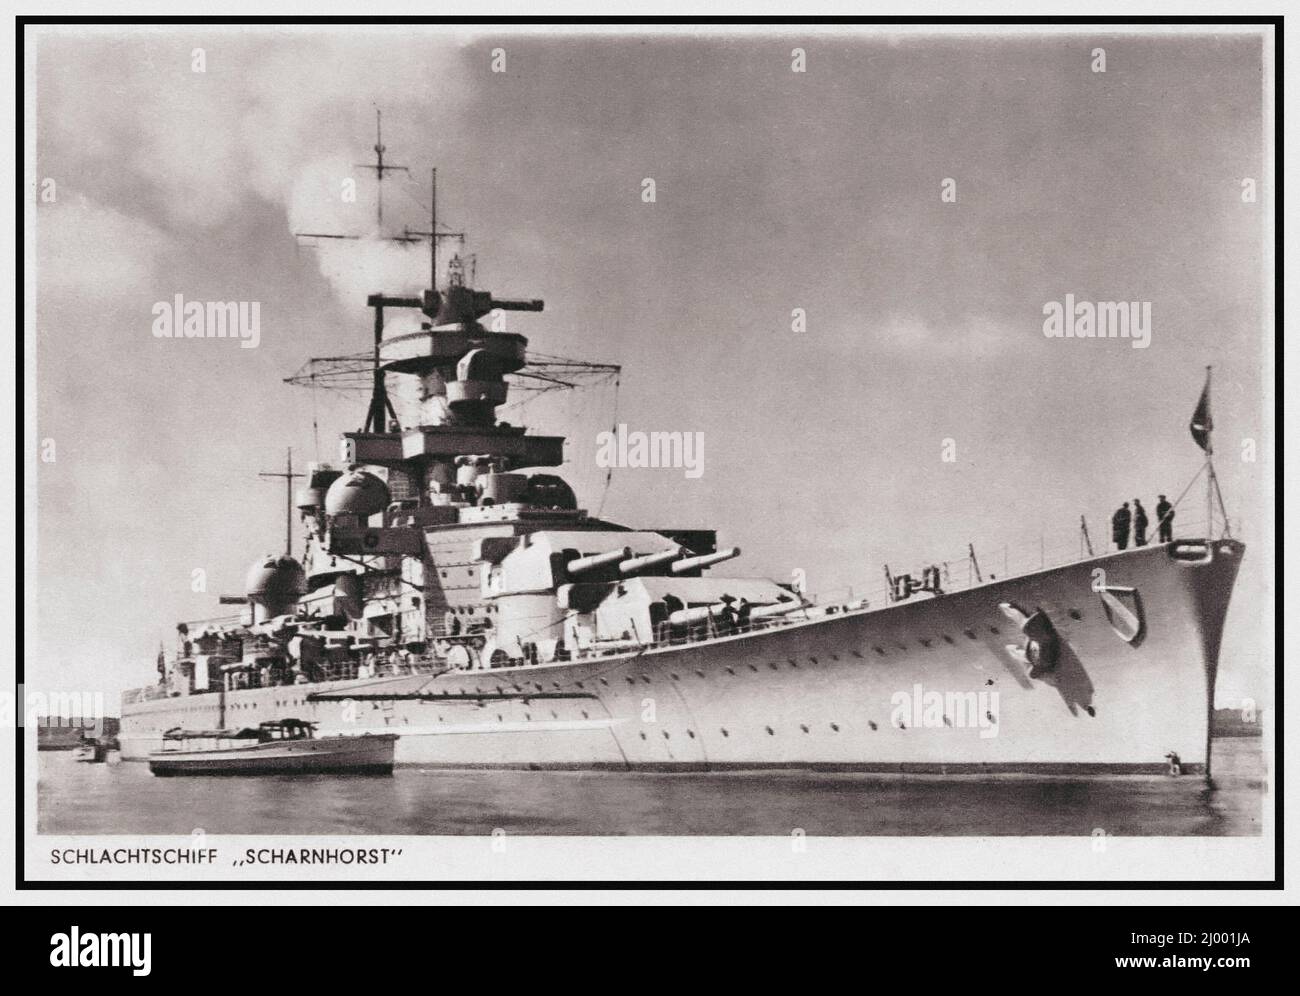 SCHARNHORST WW2 Nazi Kreigsmarine German Capital Class schlachtschiff Battleship début 1943, Scharnhorst rejoint le Battleship de la classe Bismarck Tirpitz en Norvège pour interdire les convois alliés à l'Union soviétique. Scharnhorst et plusieurs destroyers sorcelés de Norvège pour attaquer un convoi, mais les patrouilles navales britanniques ont intercepté la force allemande. Pendant la bataille du Cap Nord (26 décembre 1943), le duc de la Marine royale HMS de York a coulé Scharnhorst. Seulement 36 hommes ont survécu, sur une équipe de 1 968. Banque D'Images